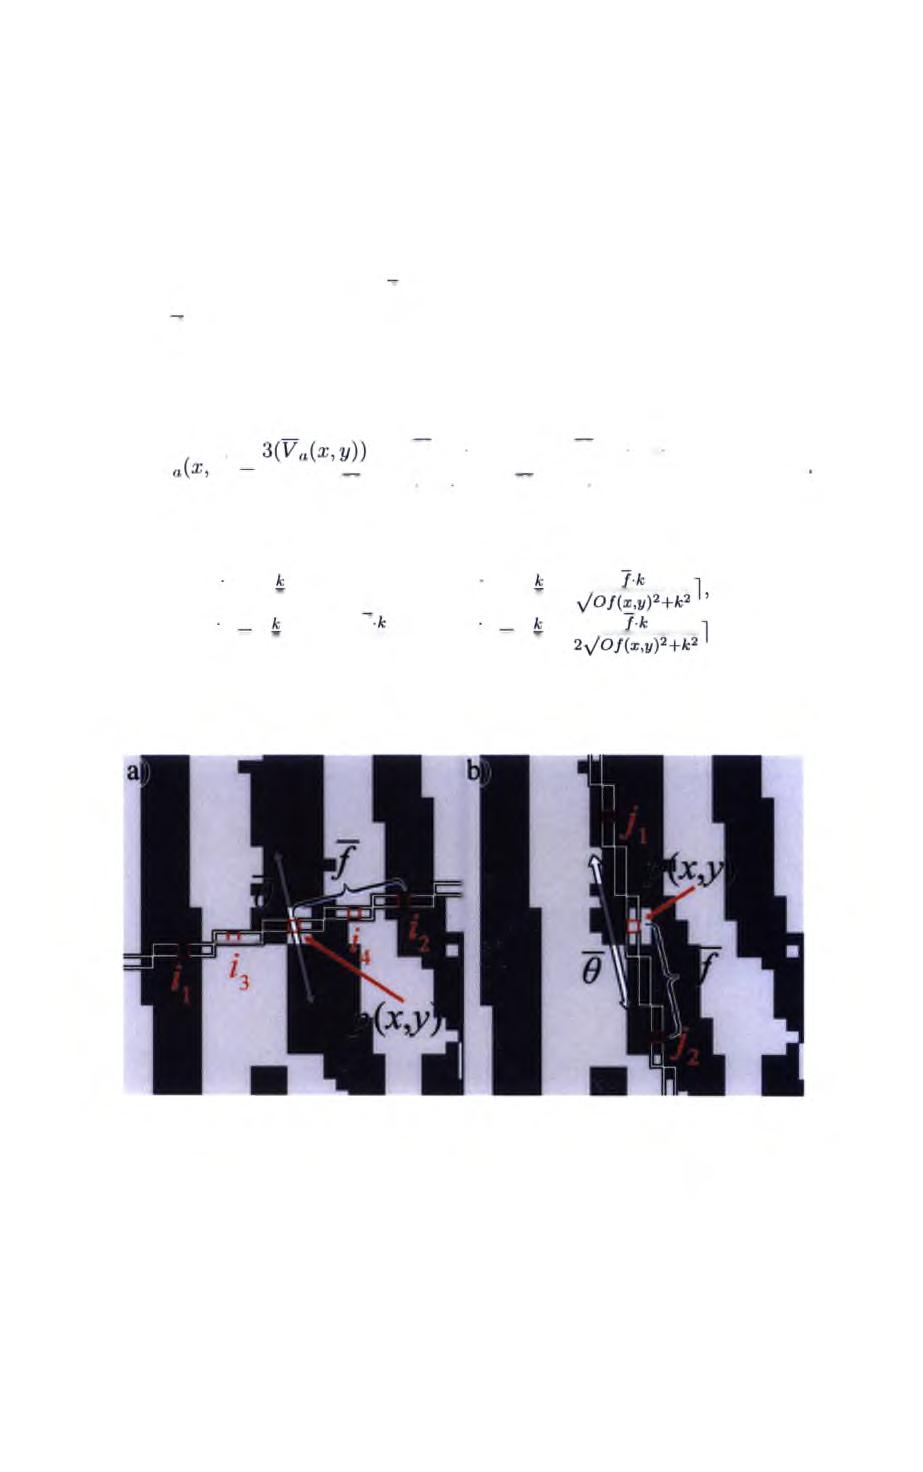 Krok 3 Poprawiony obraz binarny I quai wyznaczany jest na podstawie analizy rozkładu pikseli znajdujących się na badanej listewce skórnej oraz